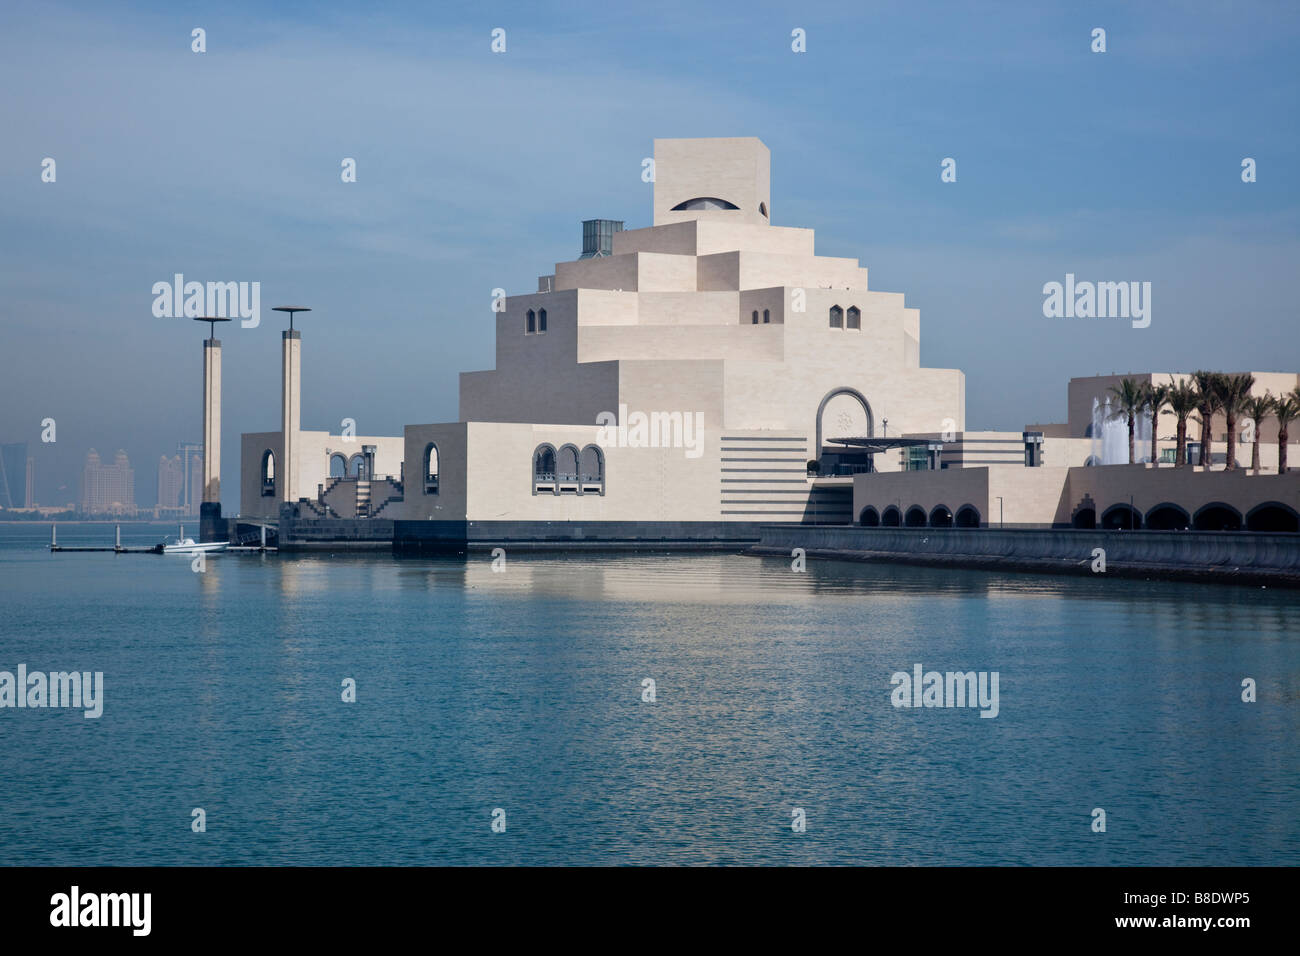 Museum of Islamic Art in Doha Qatar Stock Photo